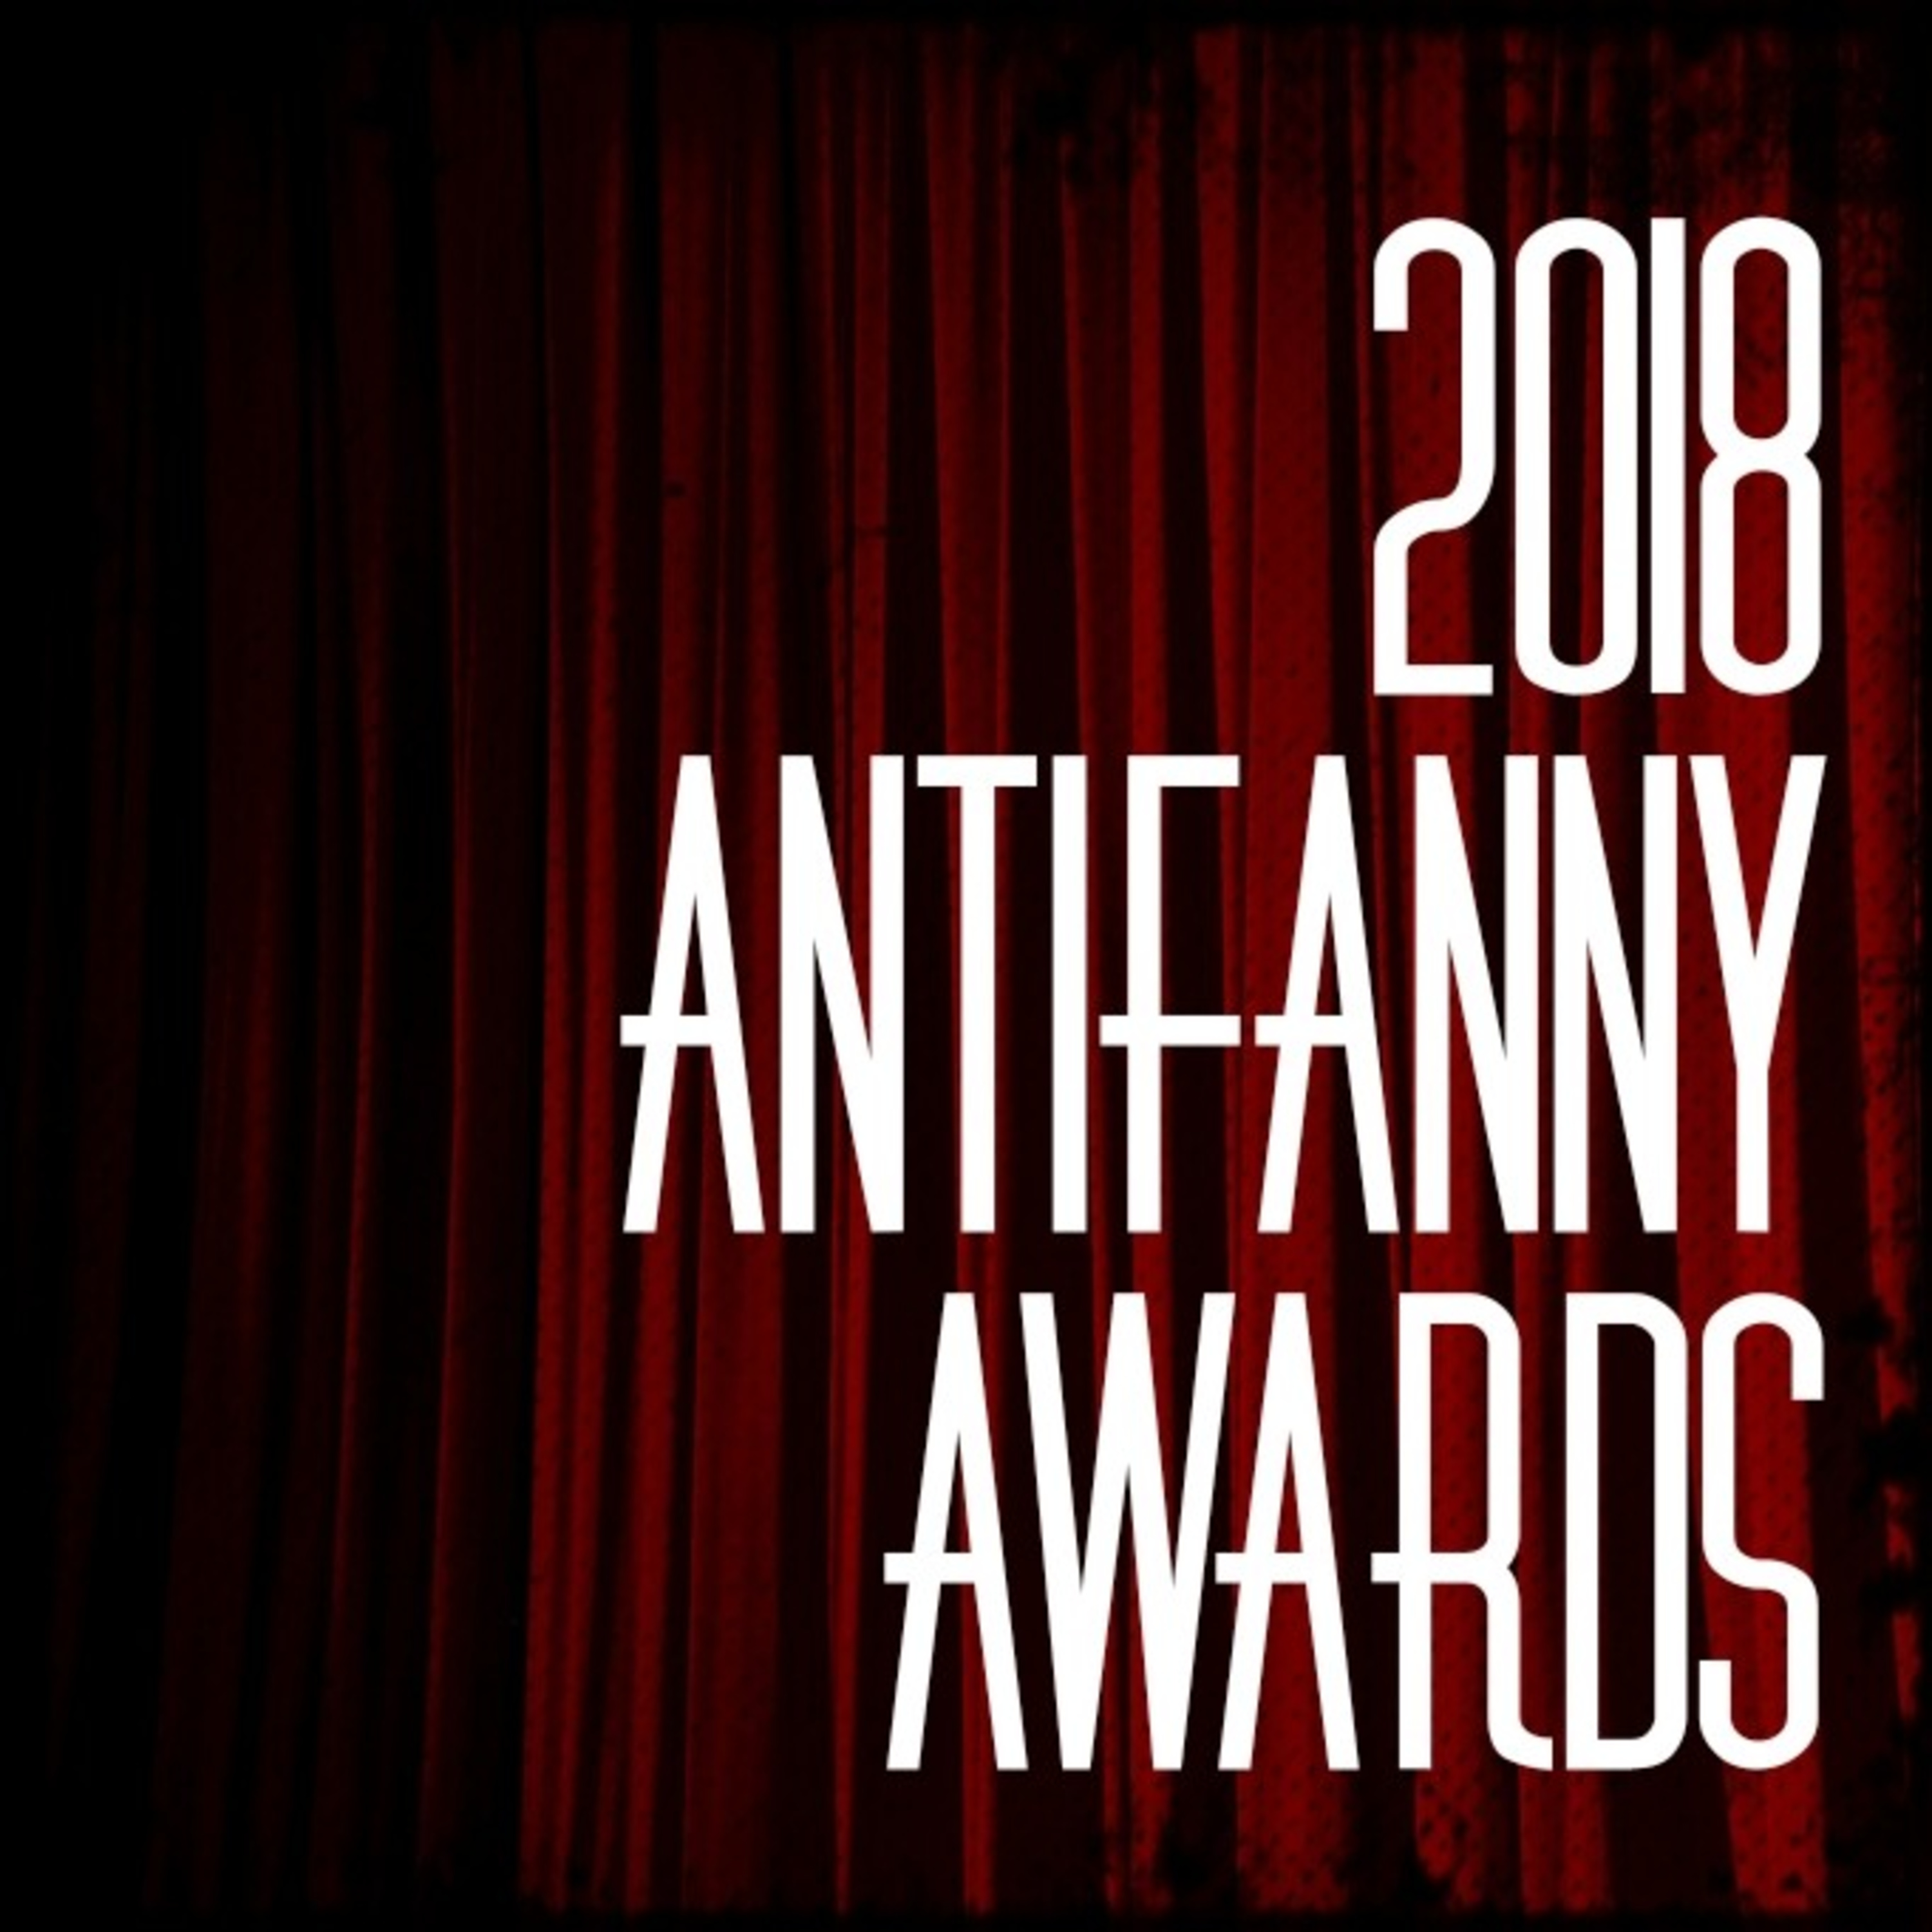 283 The 2018 ANTiFanny Awards